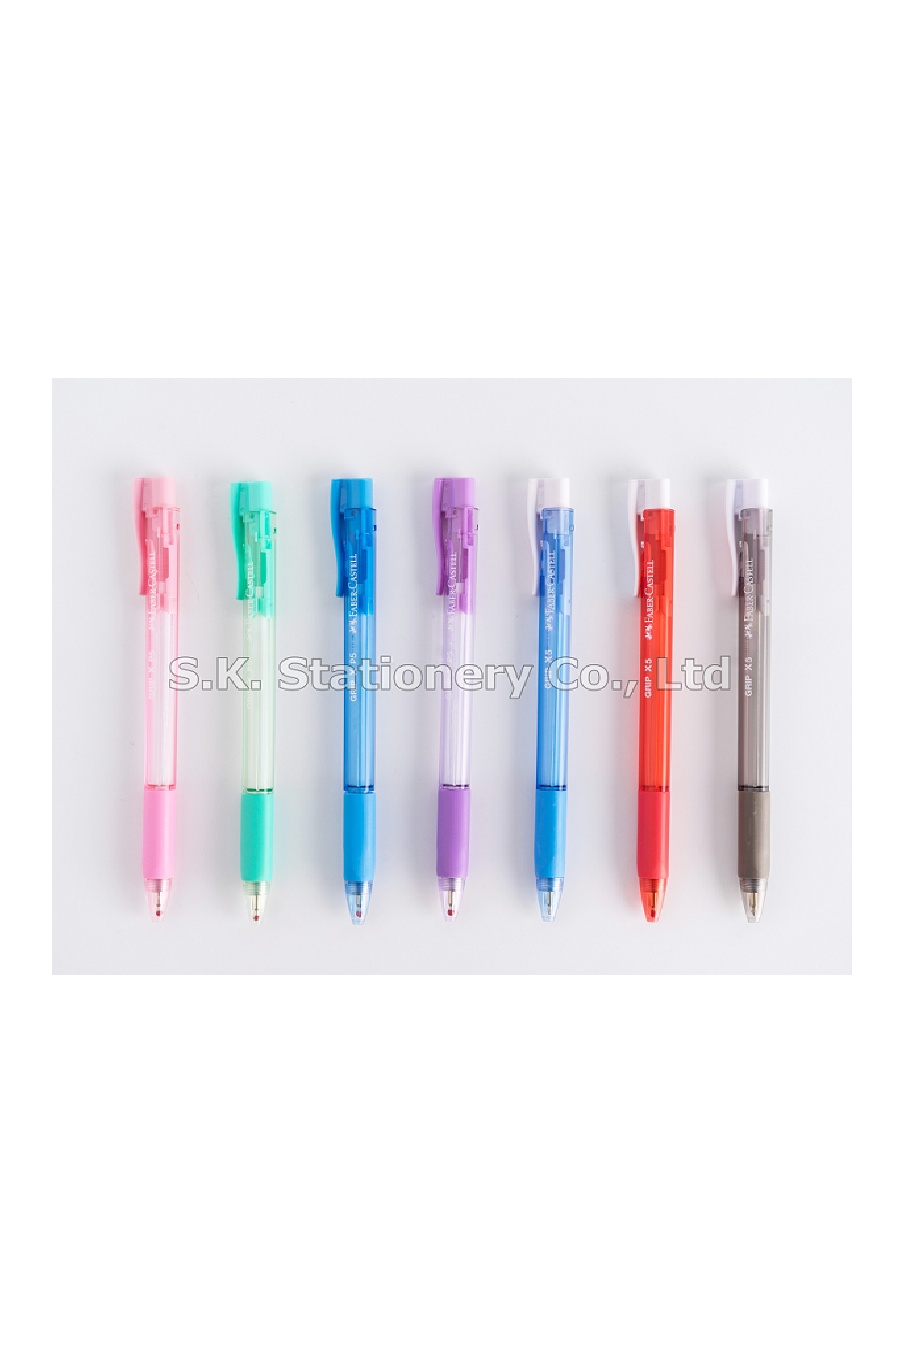 ปากกาเฟเบอร์ GRIP X5 ( 10 ด้าม )